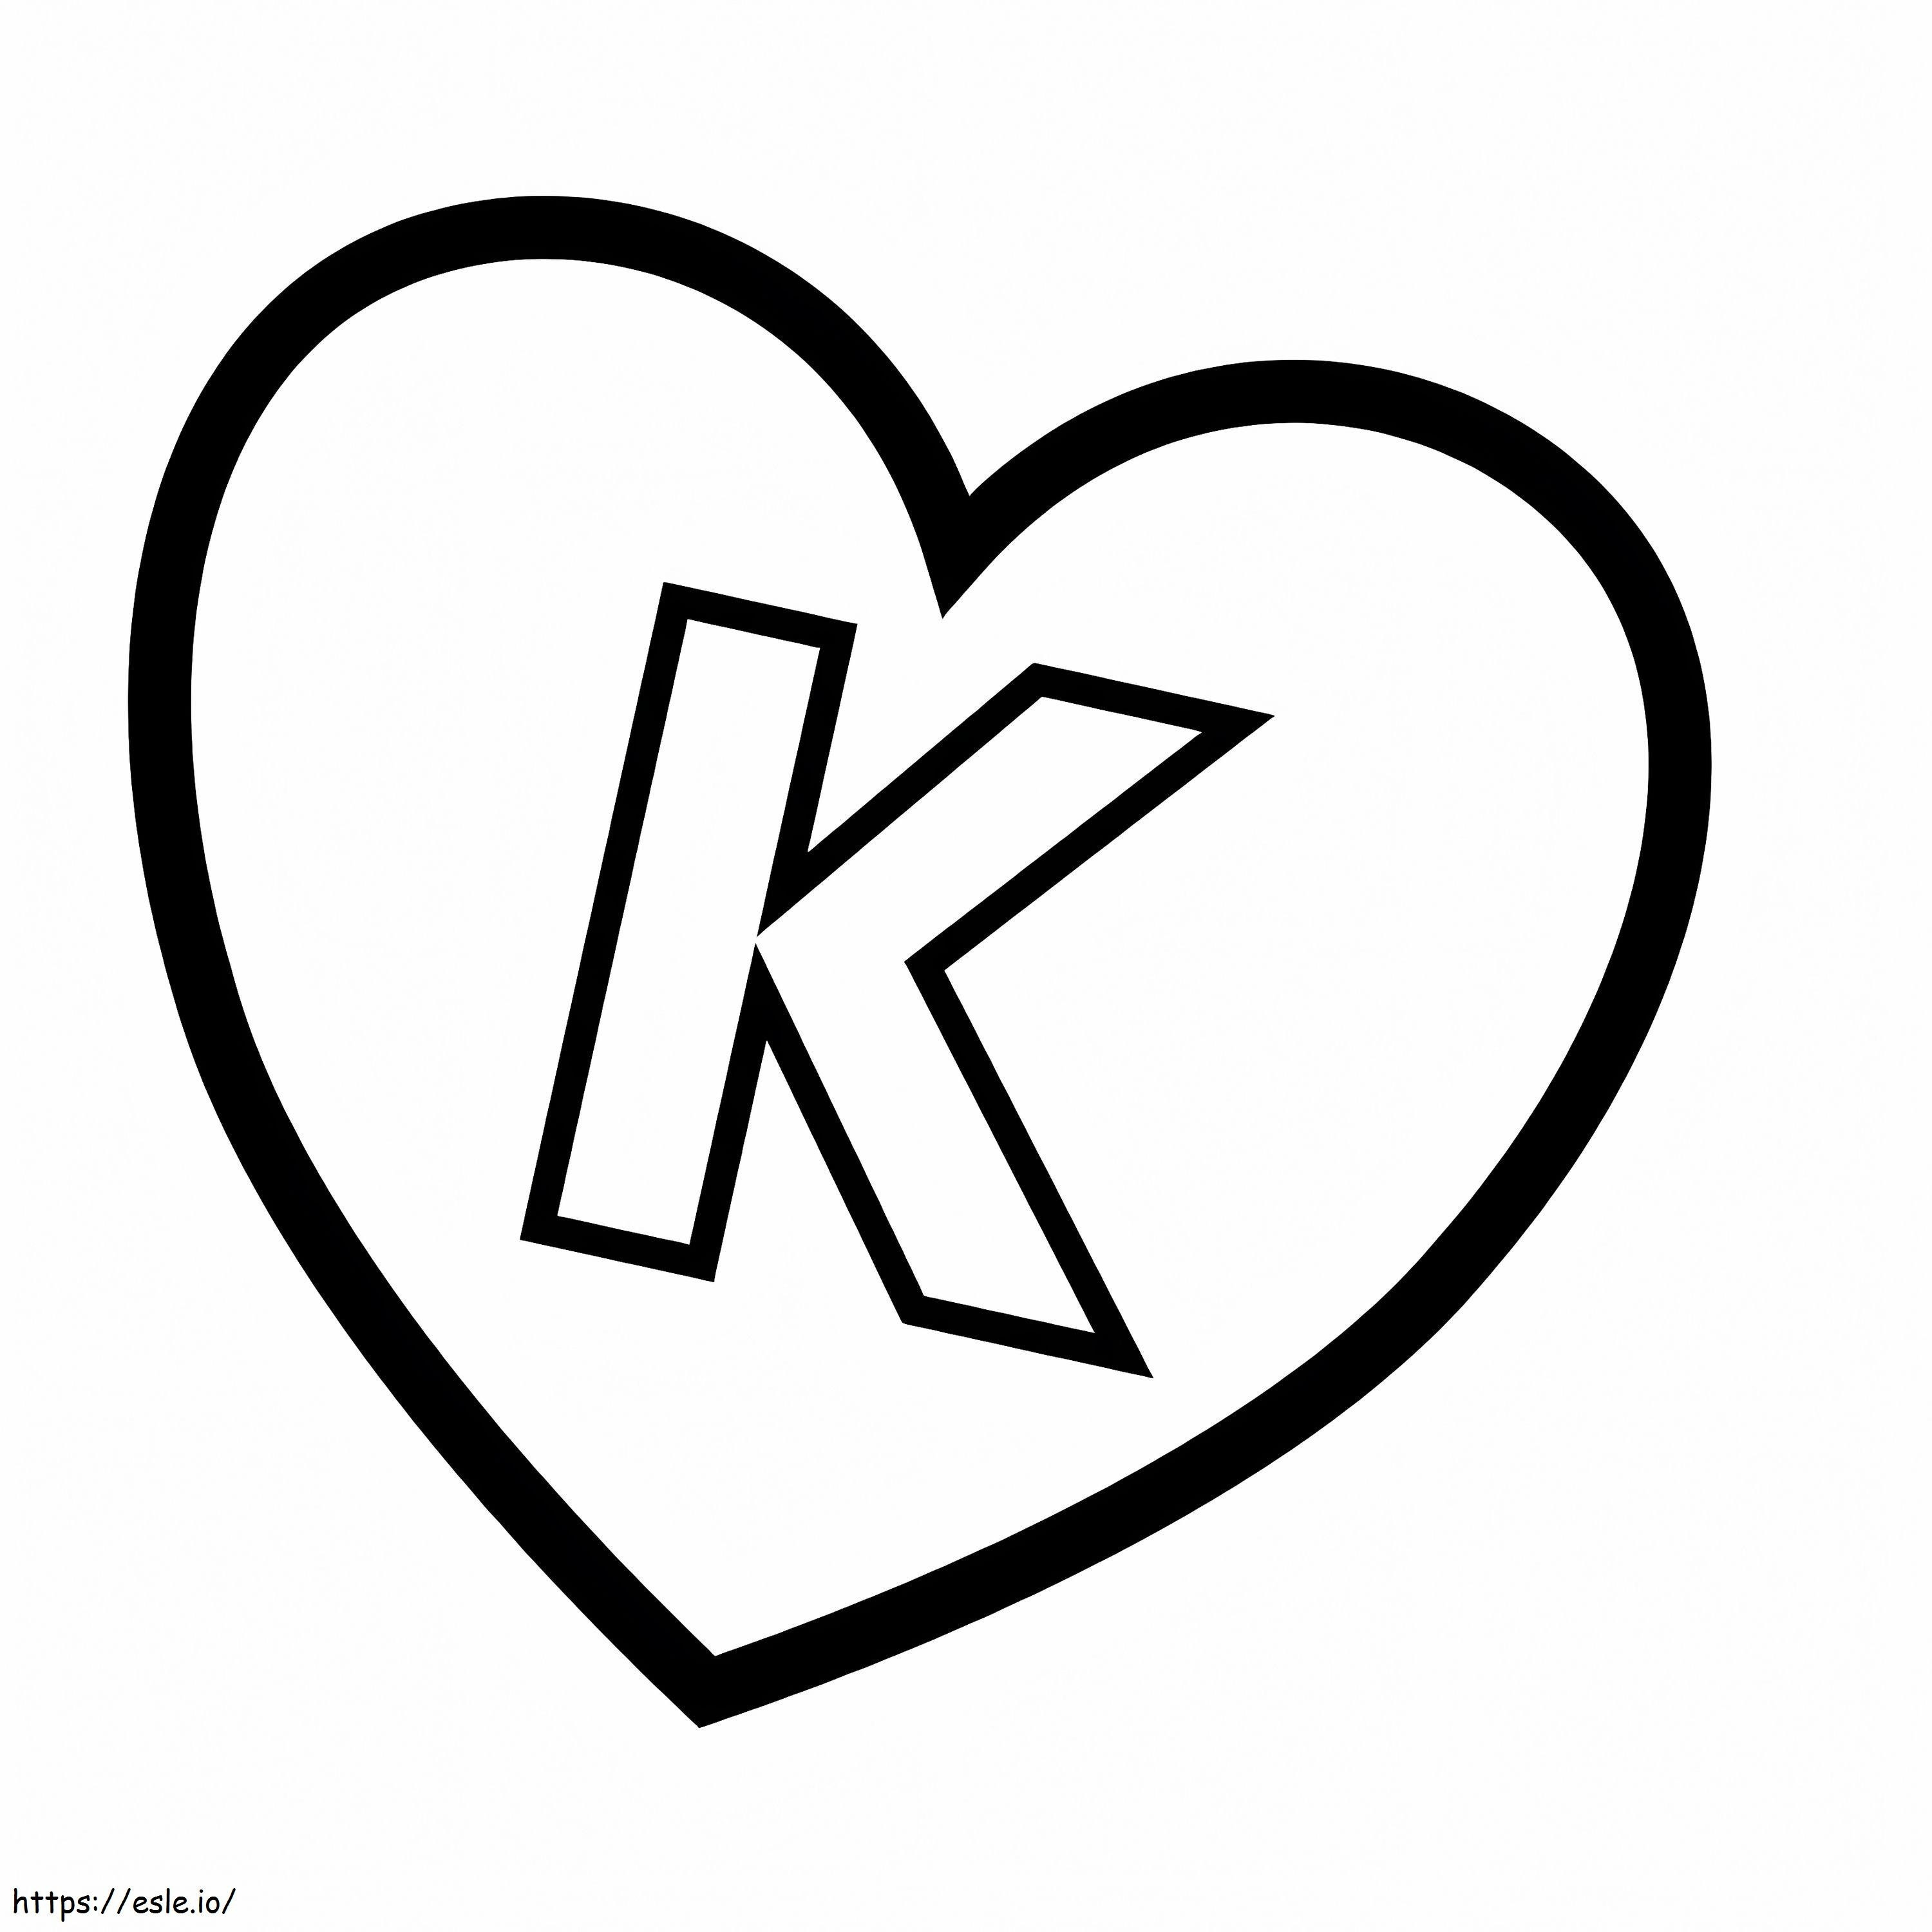 Letra K no coração para colorir